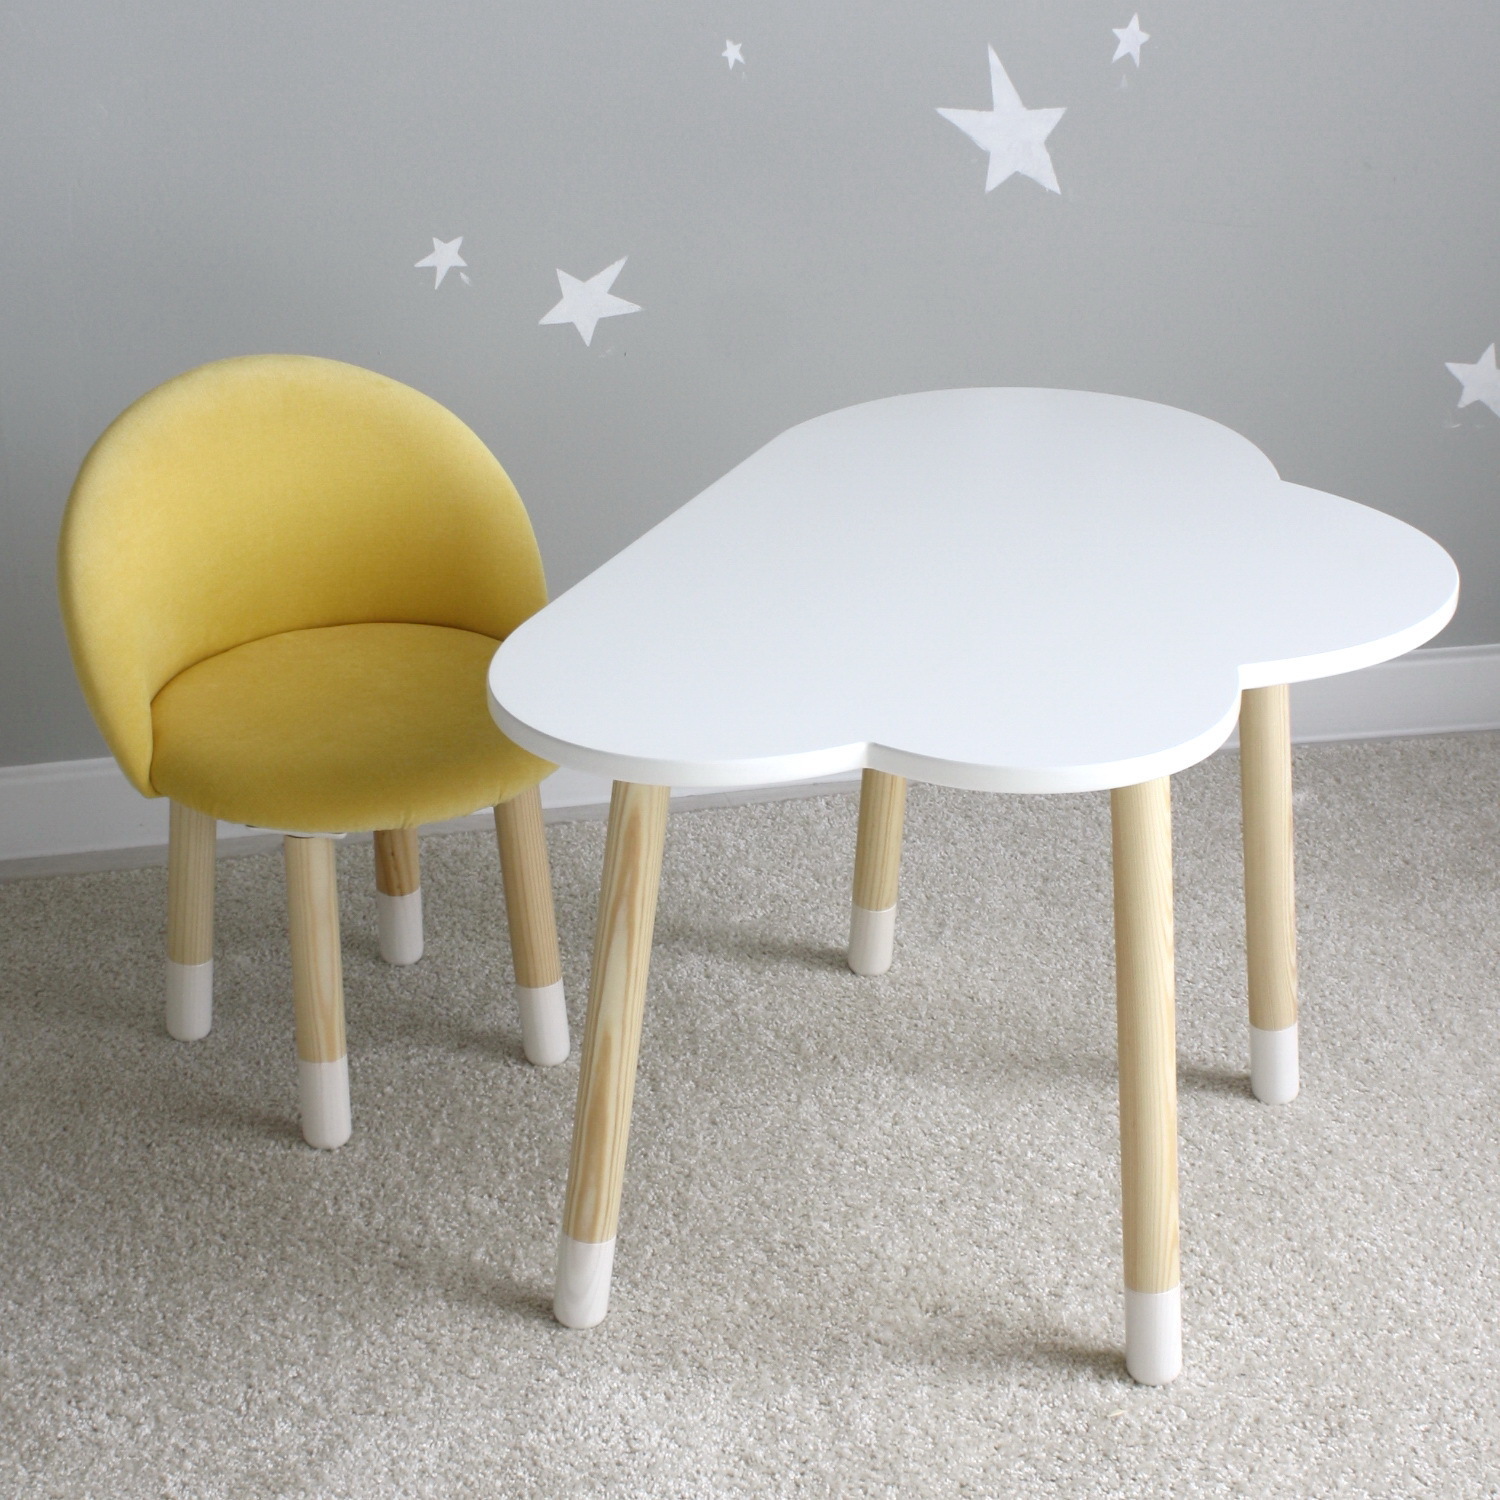 Комплект детской мебели DIMDOM kids Облако белый + Мягкий стульчик Желтый комплект детской мебели rules стол и стульчик мишка ножки цилиндрической формы в носочках